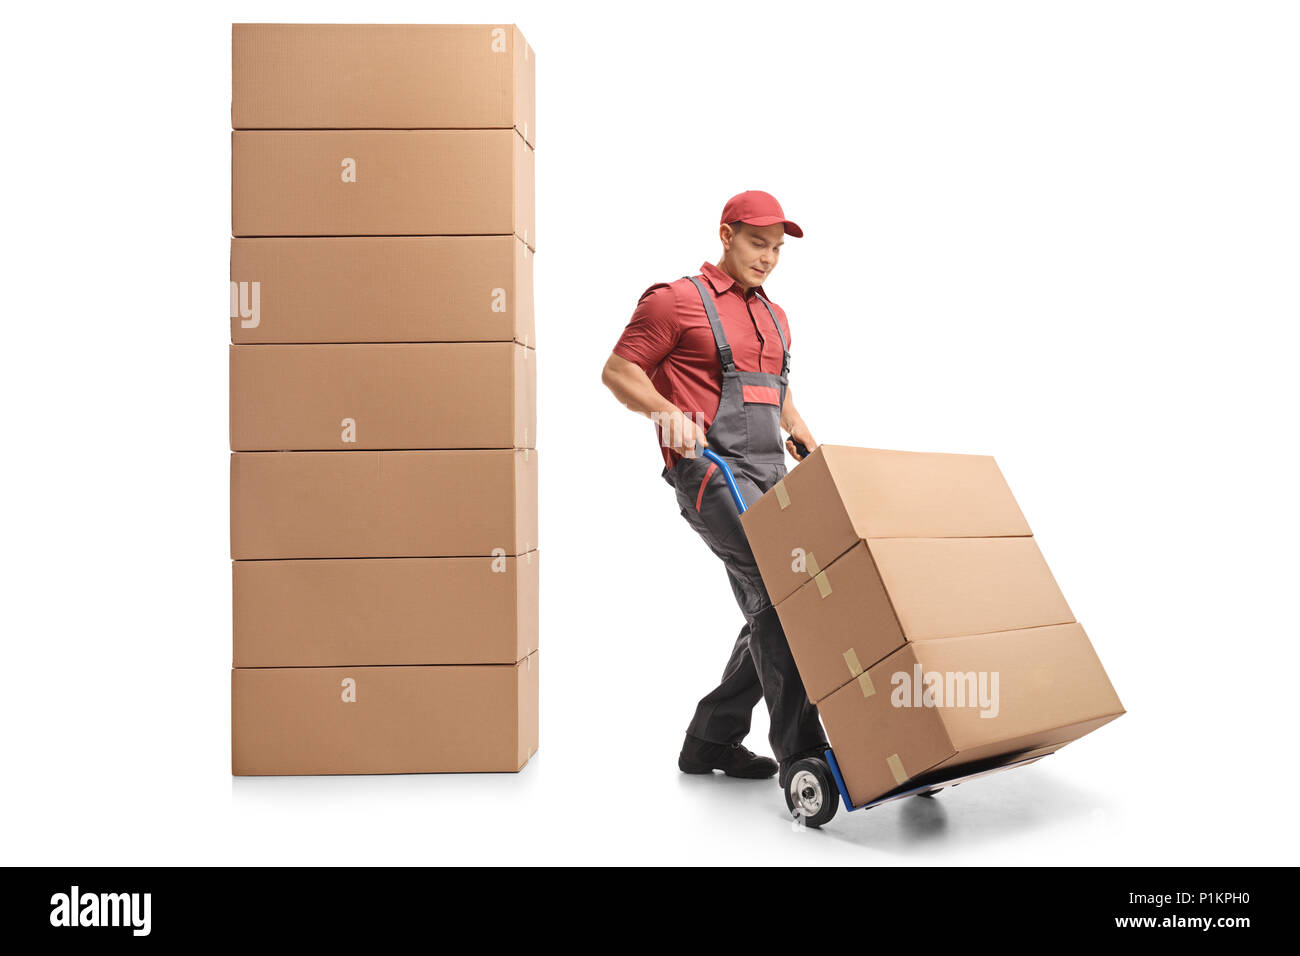 Mover con un carrello elevatore a mano accanto a una pila di scatole isolate su sfondo bianco Foto Stock